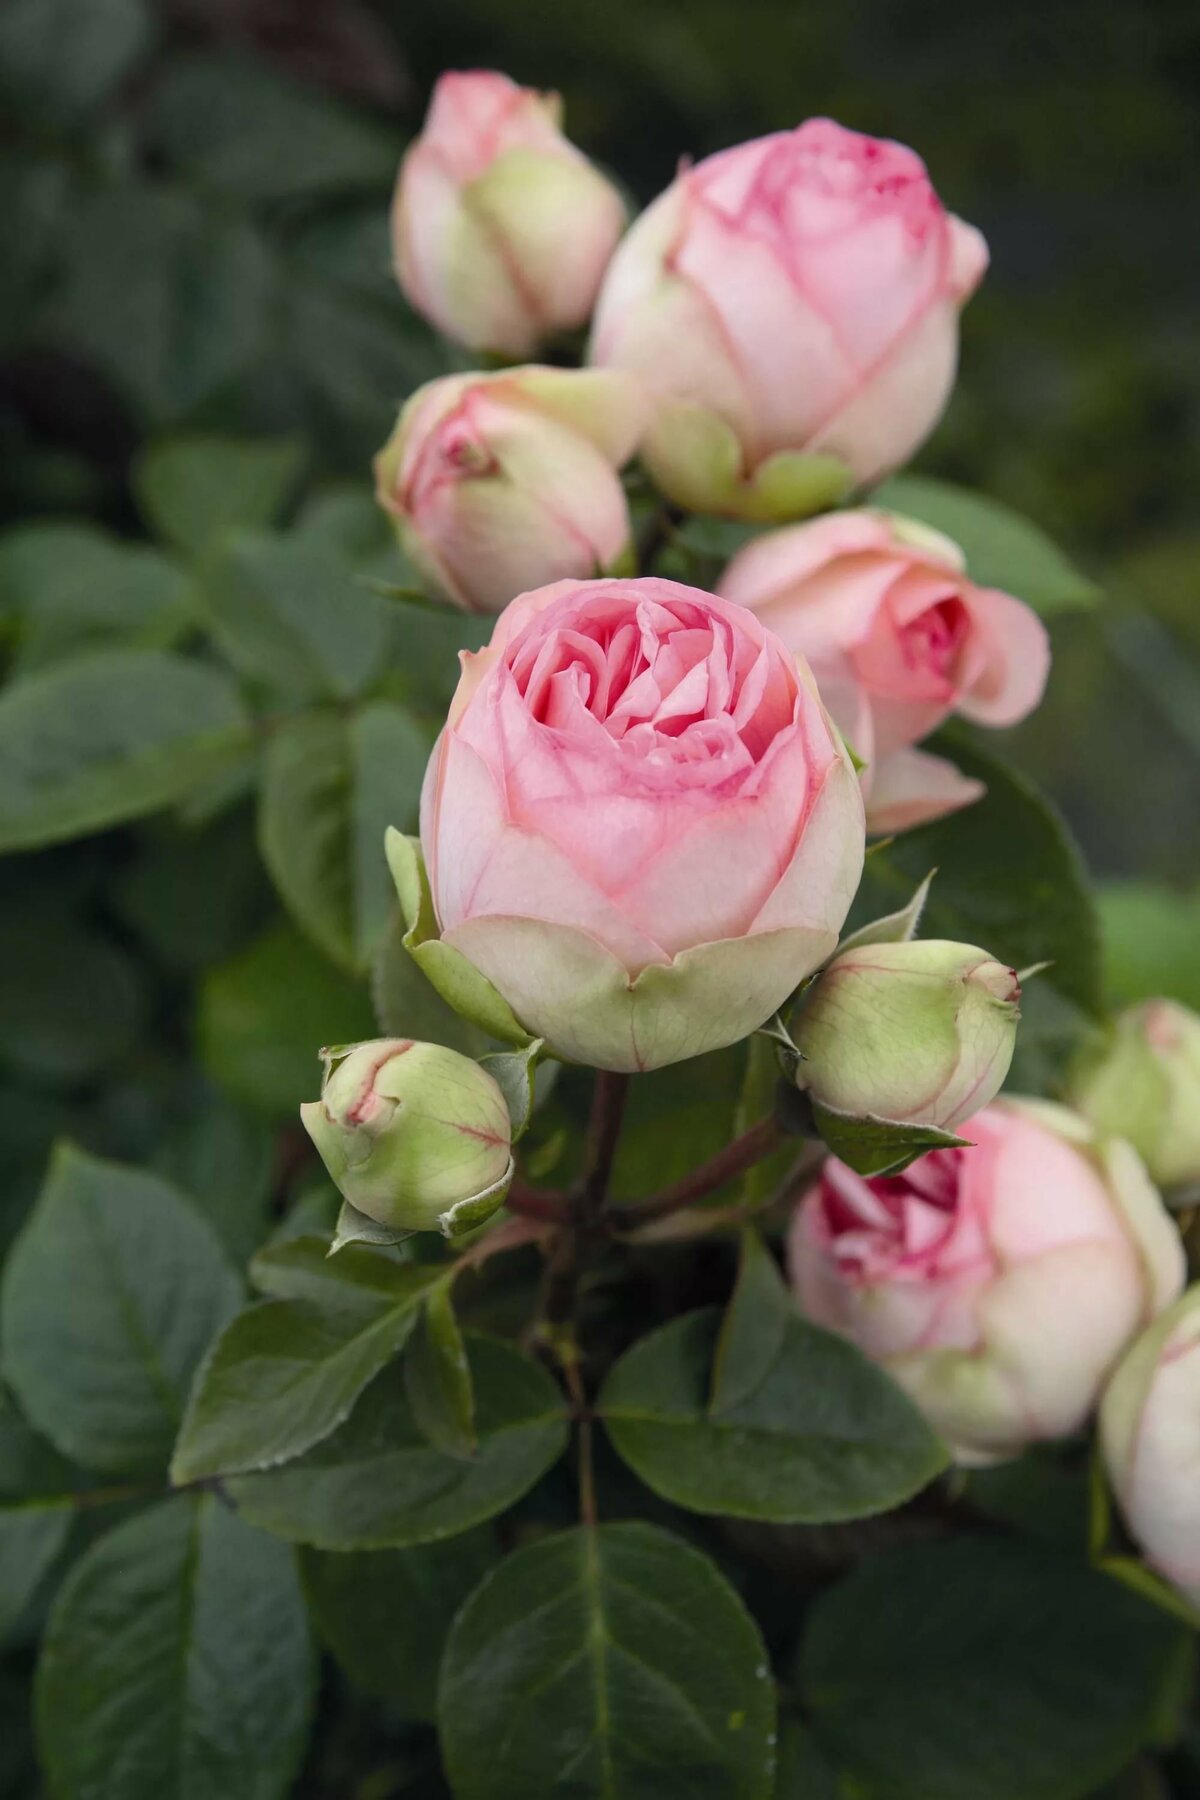 Описание 15 лучших сортов пионовидных роз, посадка и уход в открытом грунте